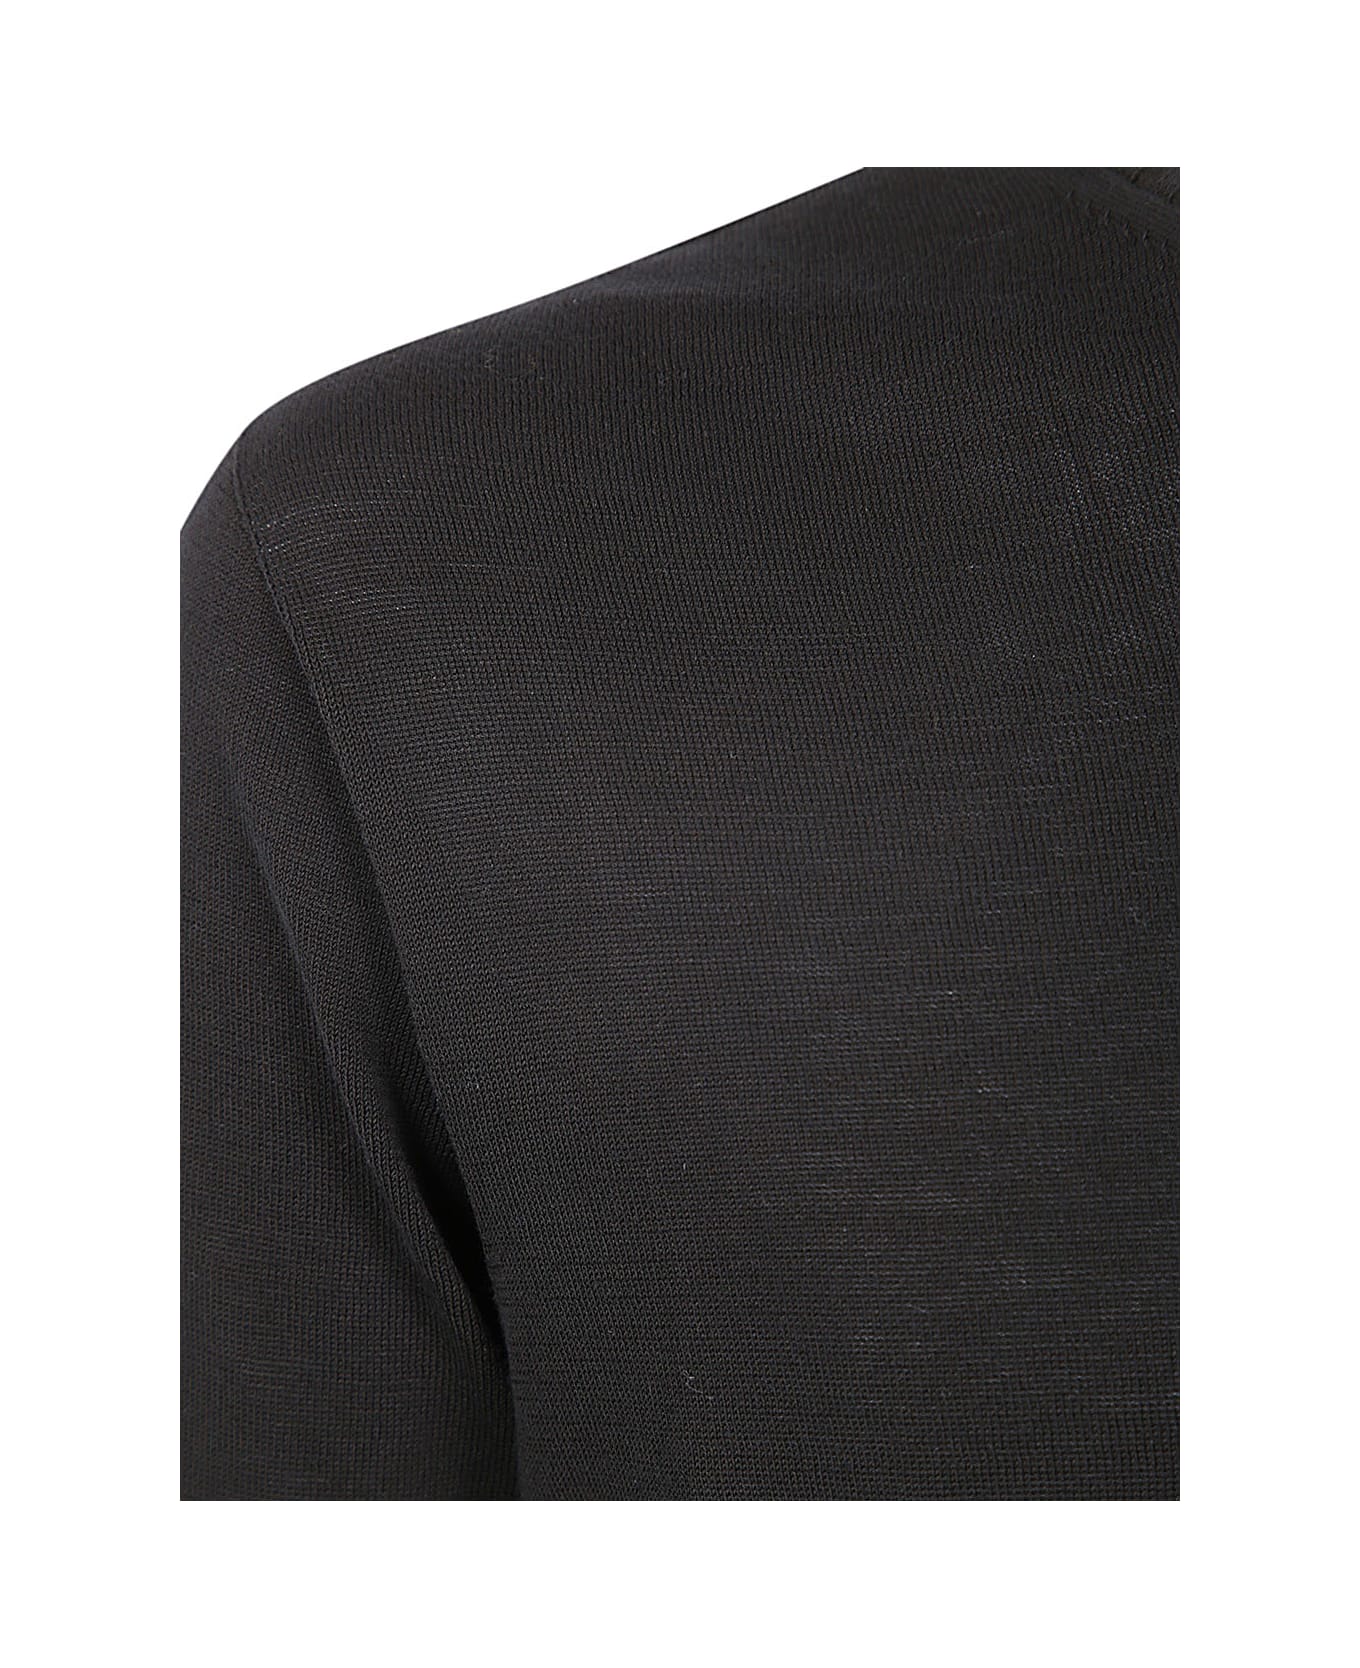 MD75 Classic Round Neck Pullover - Basic Black ニットウェア